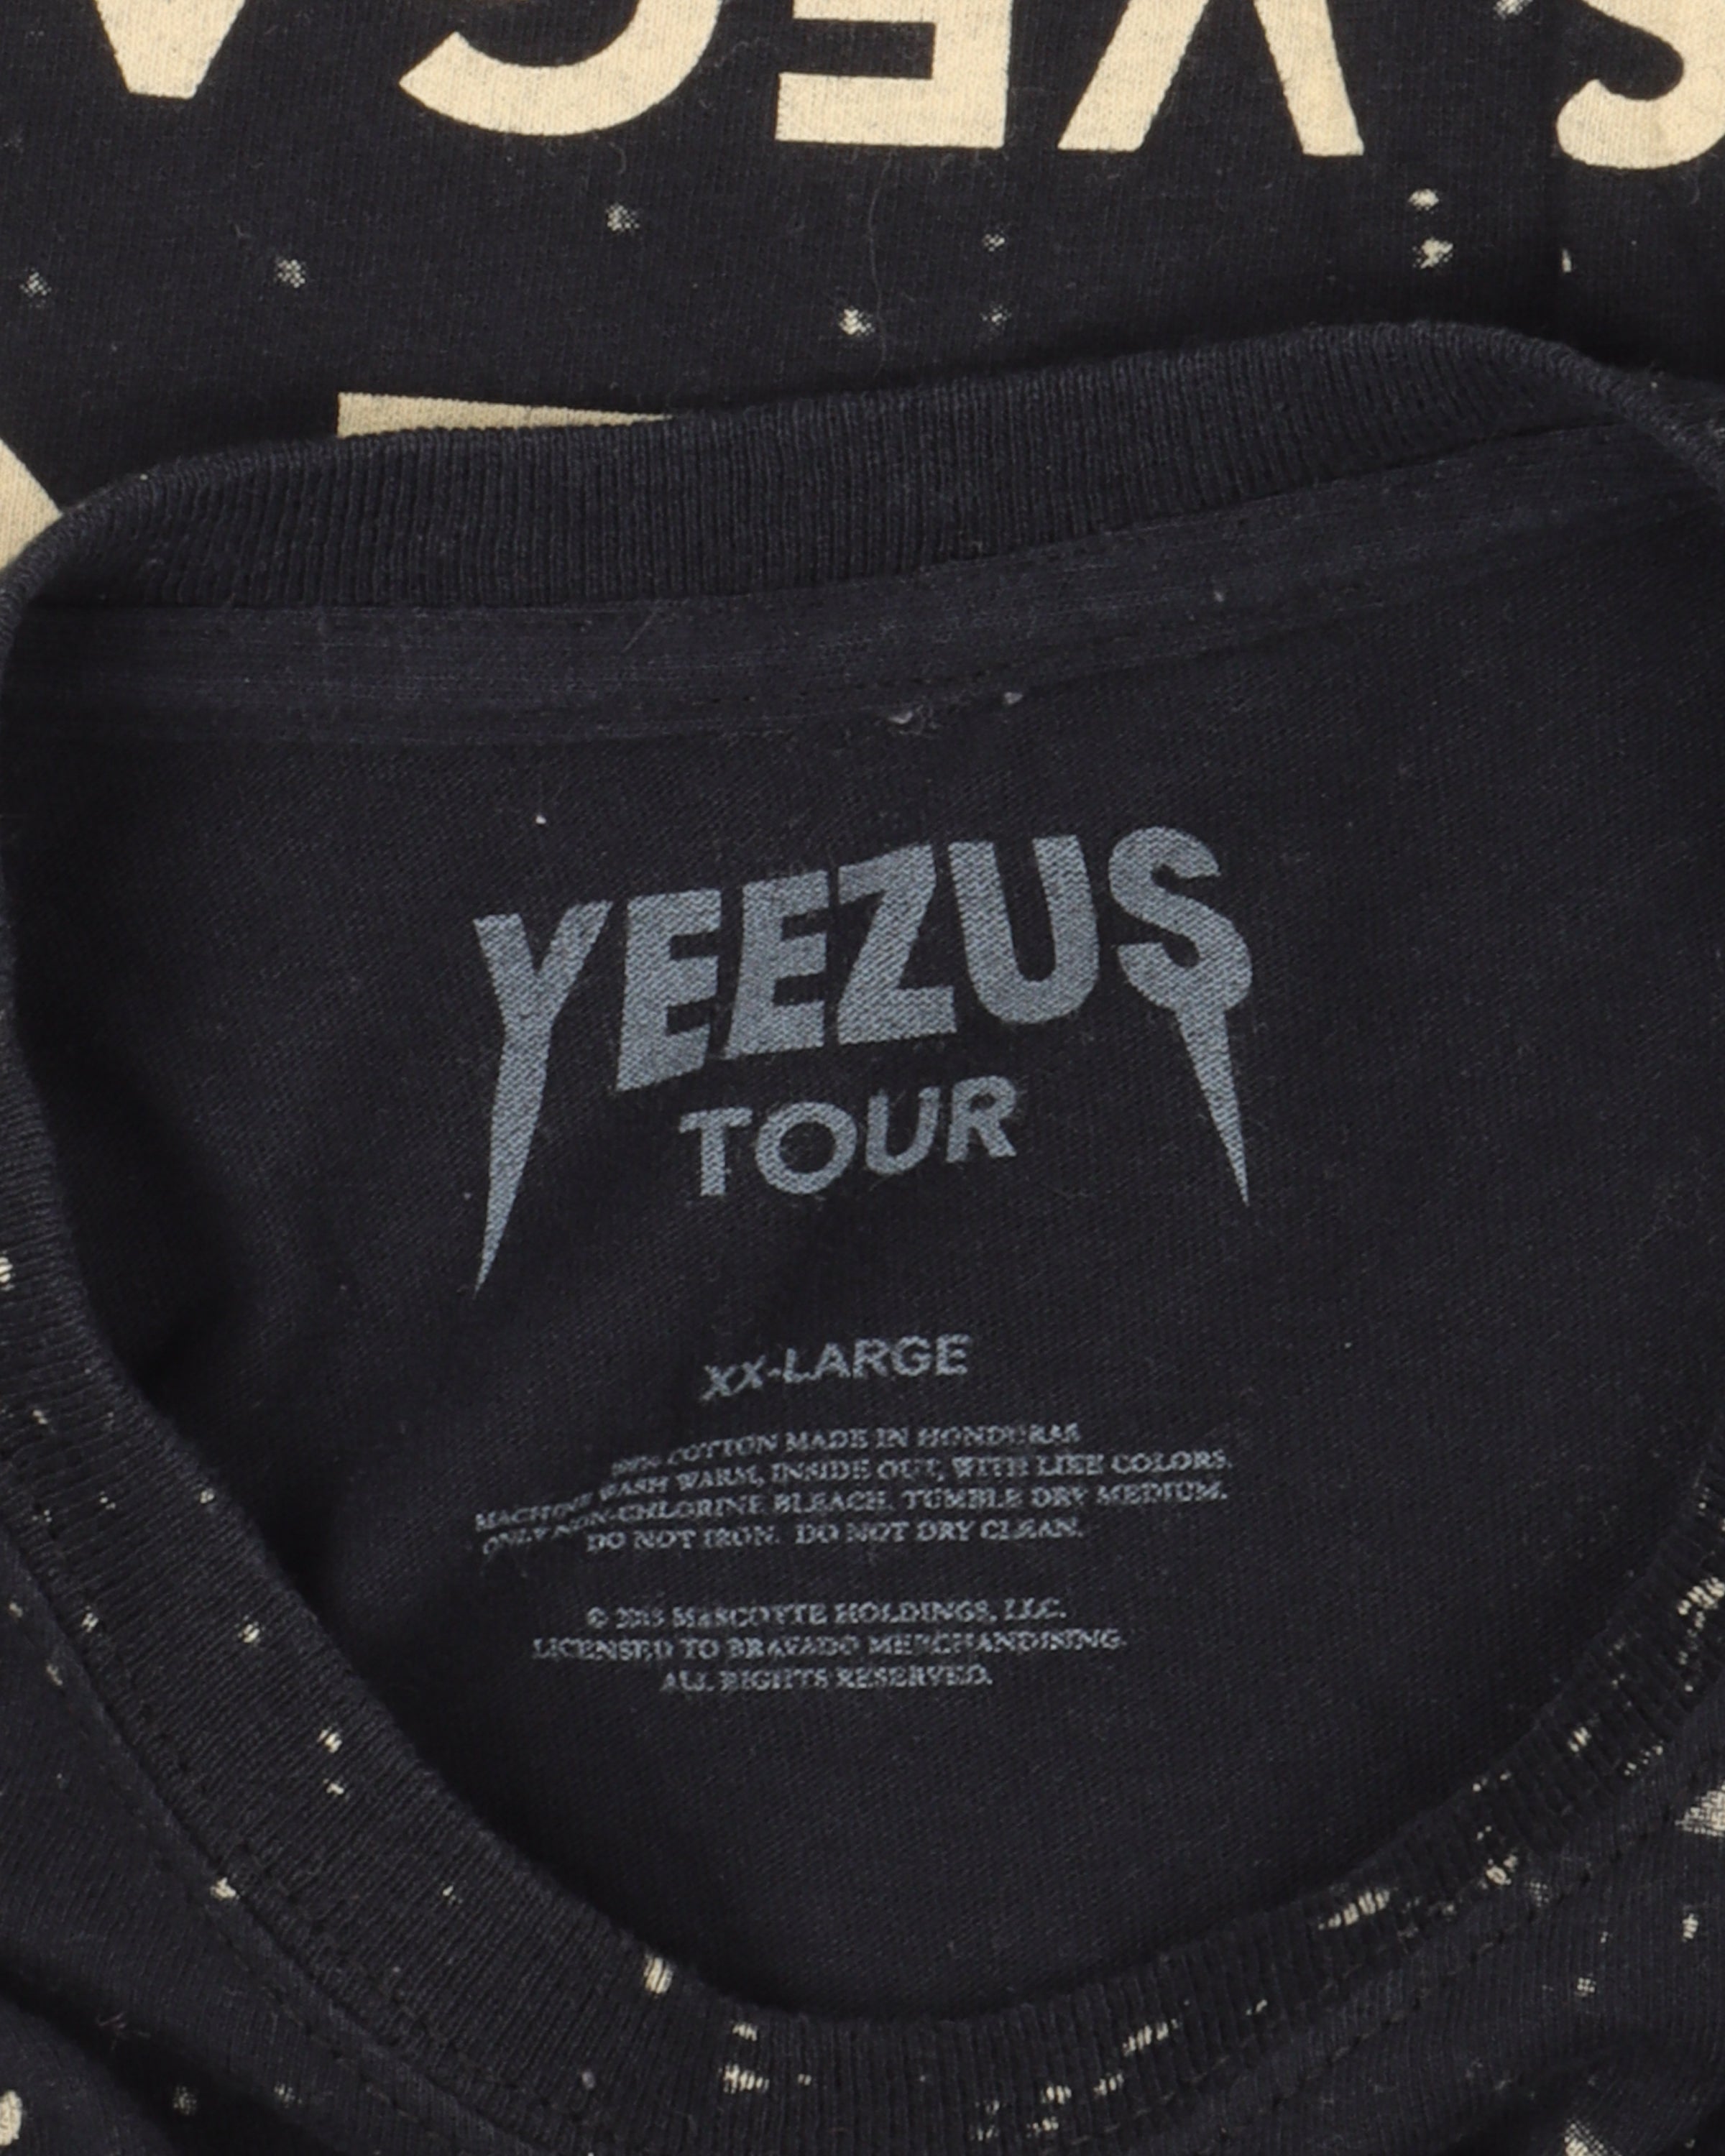 Yeezus Las Vegas Space Lady Merch T-Shirt